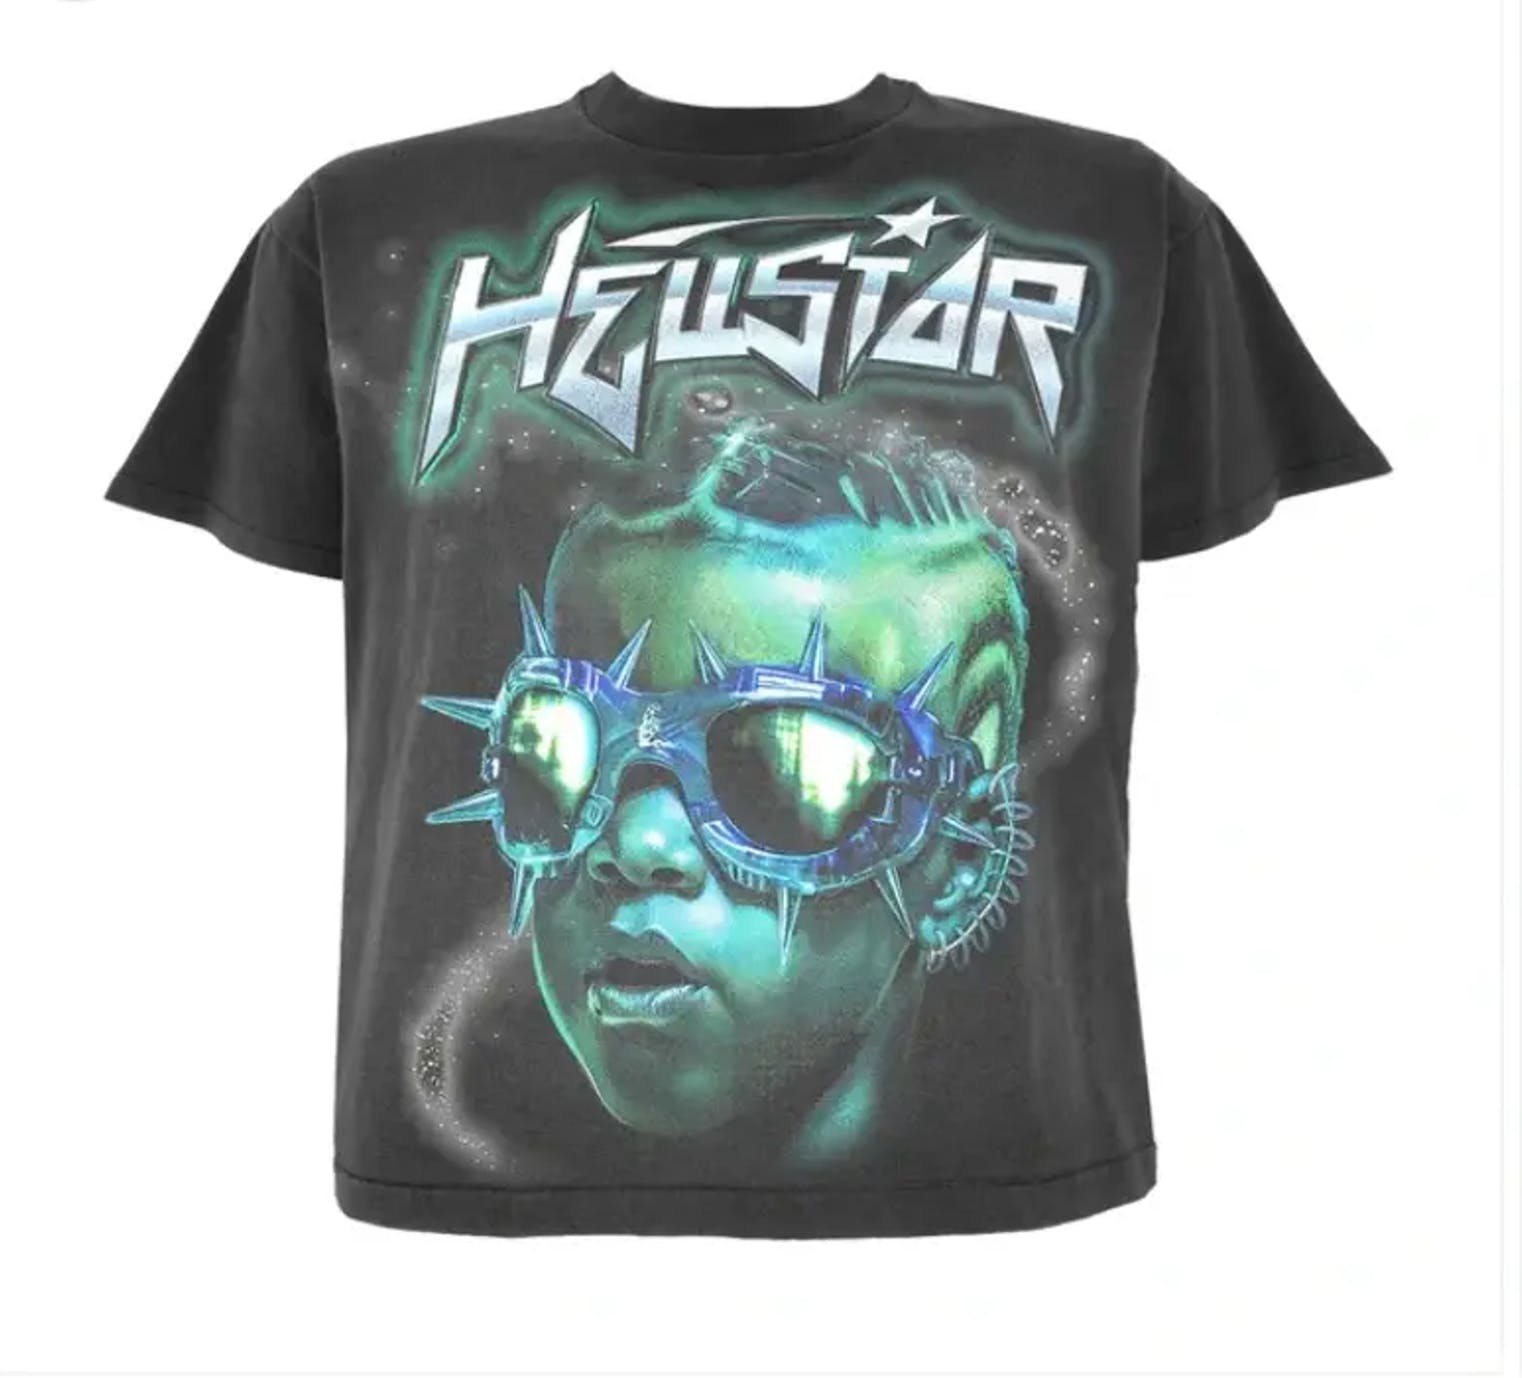 Hellstar Shirt Graphic Artwork